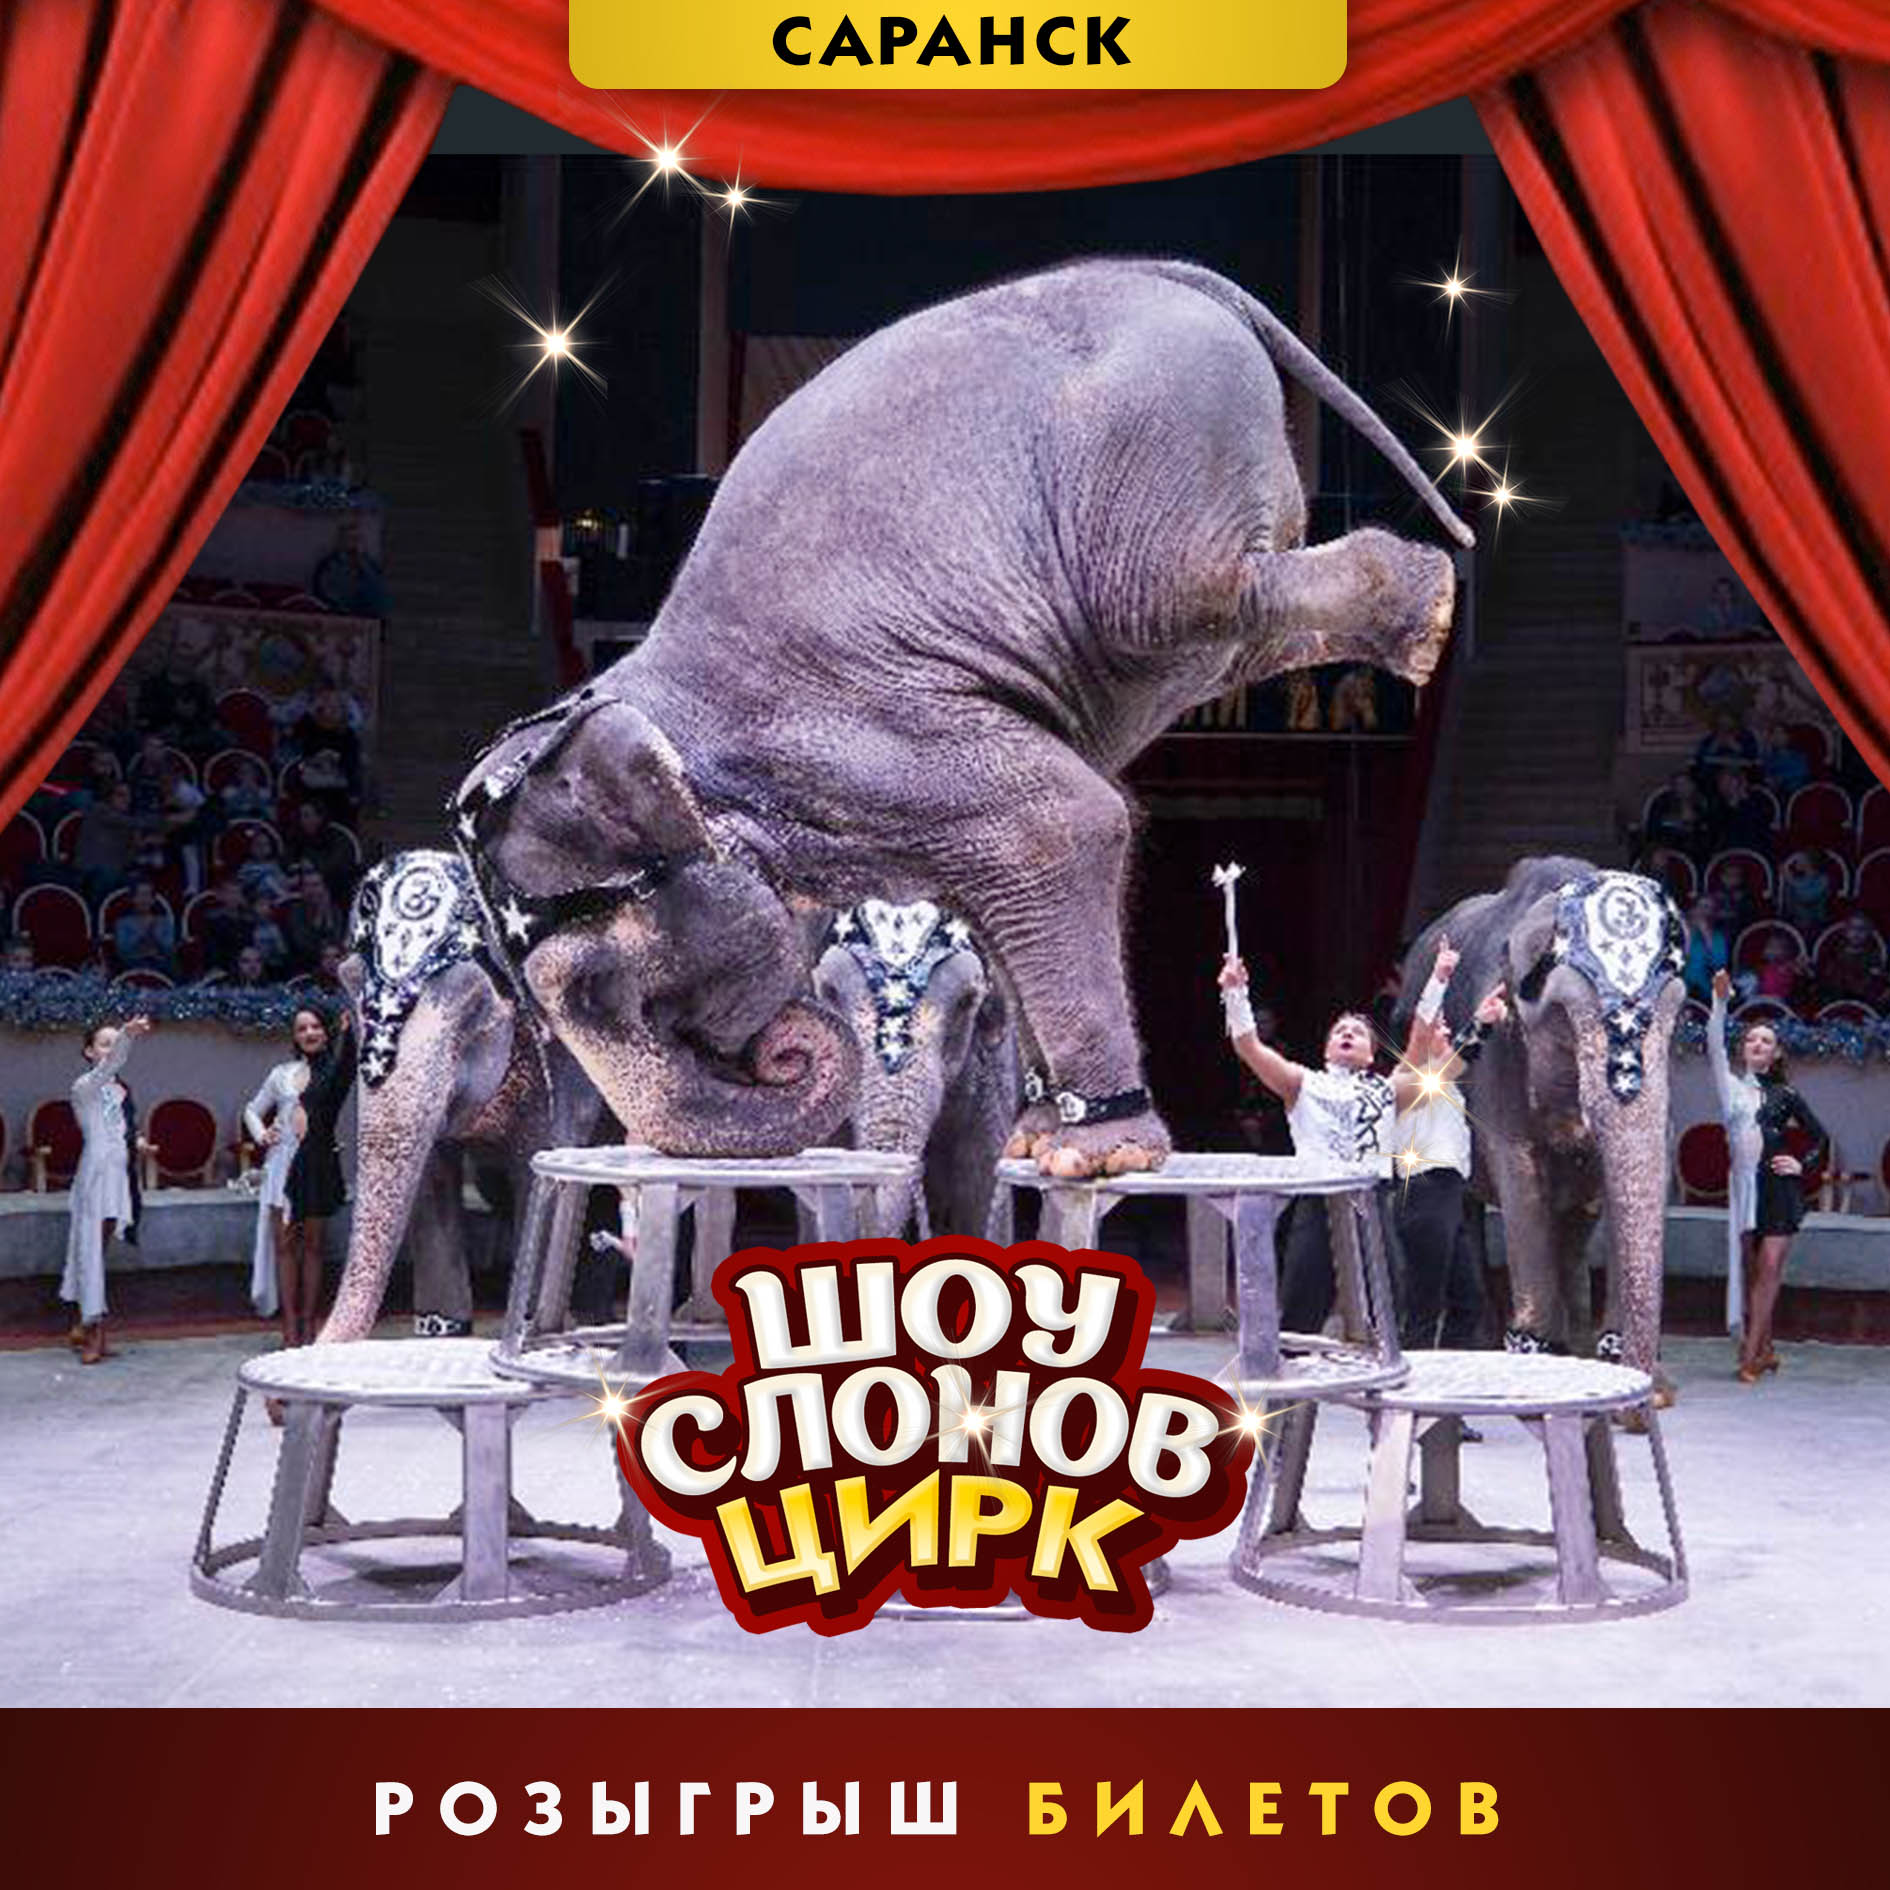 Цирк шоу слонов братьев Гертнер в Саранске